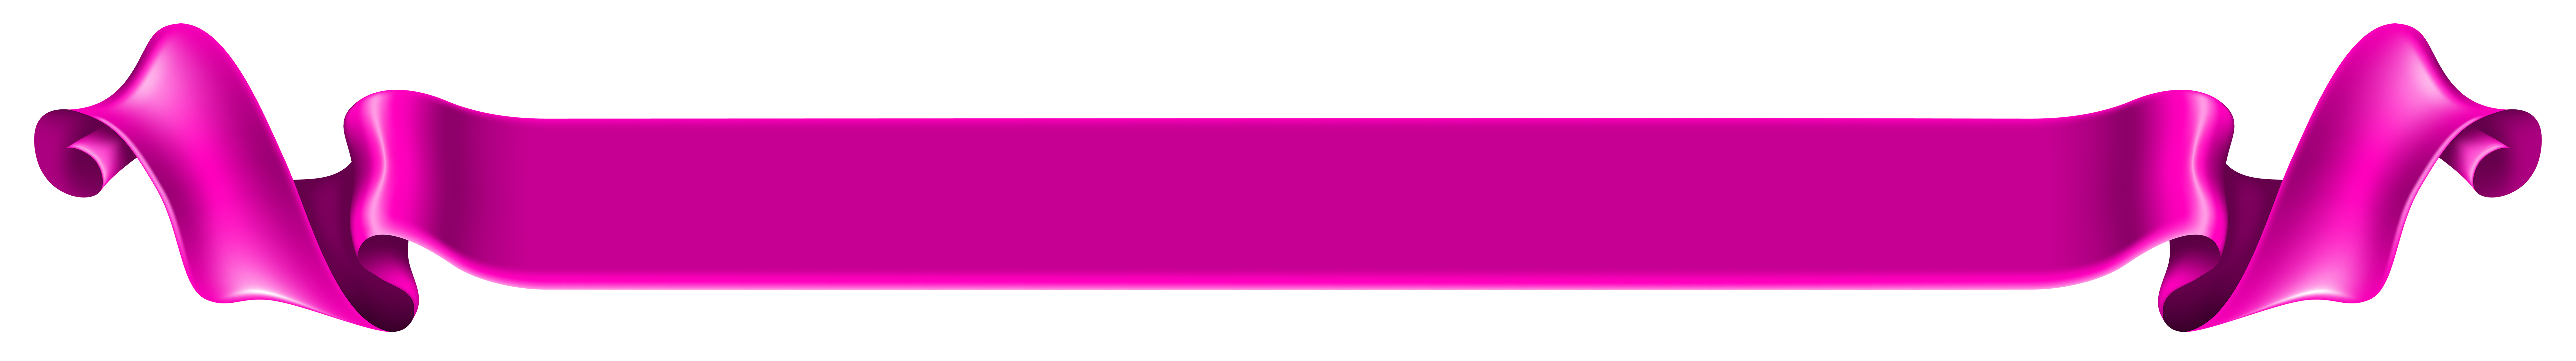 Imagem transparente da bandeira violeta